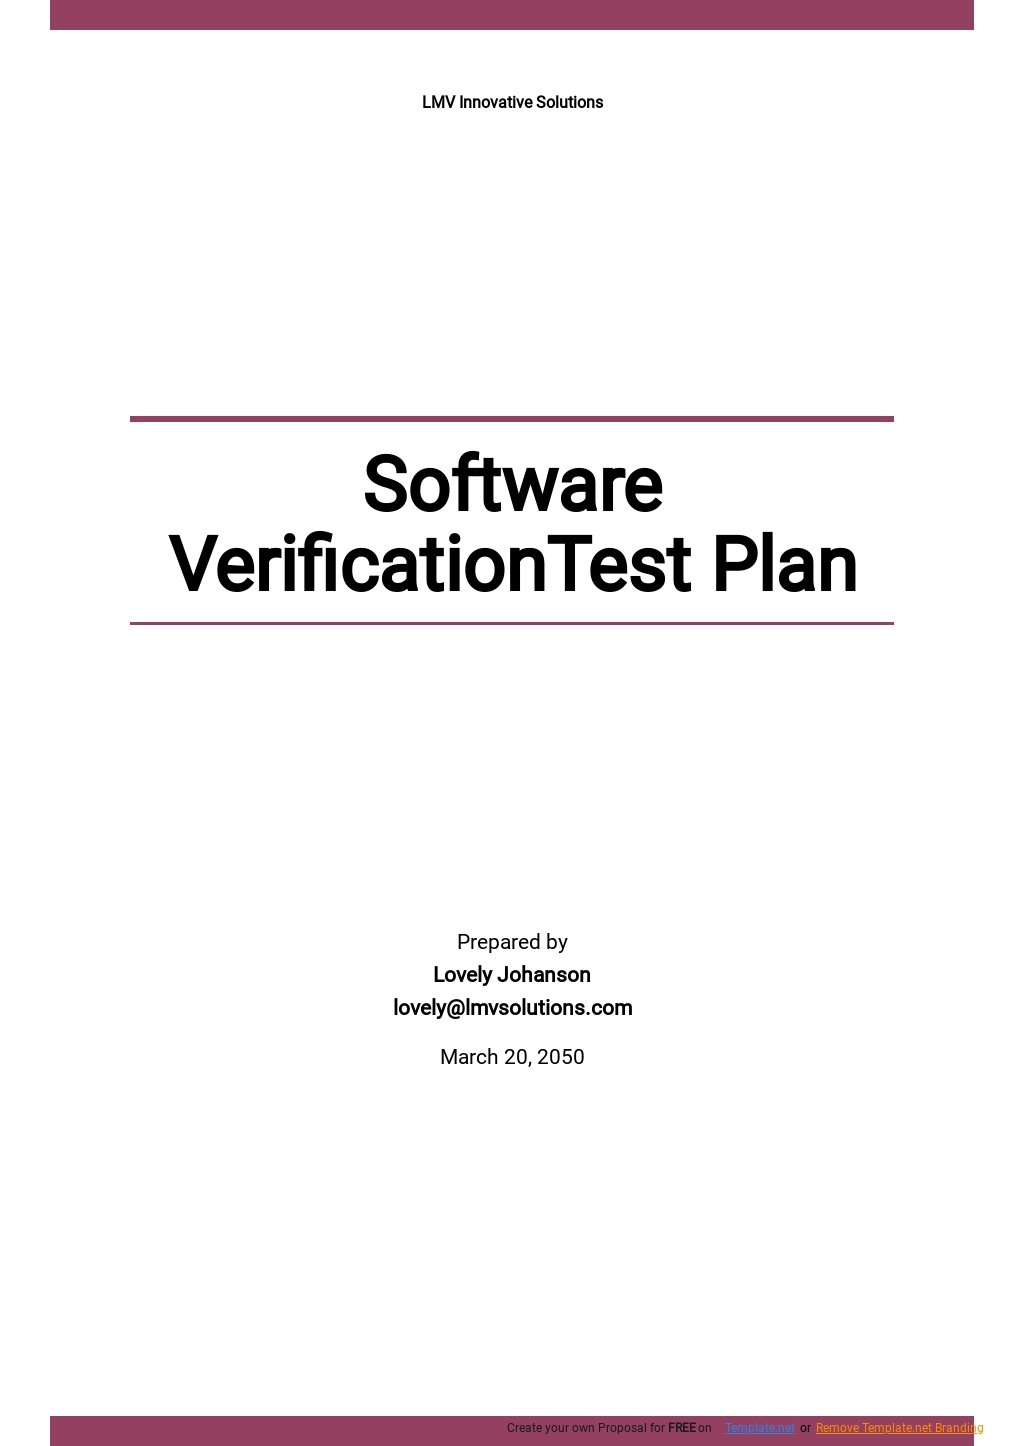 Software Verification Test Plan Template